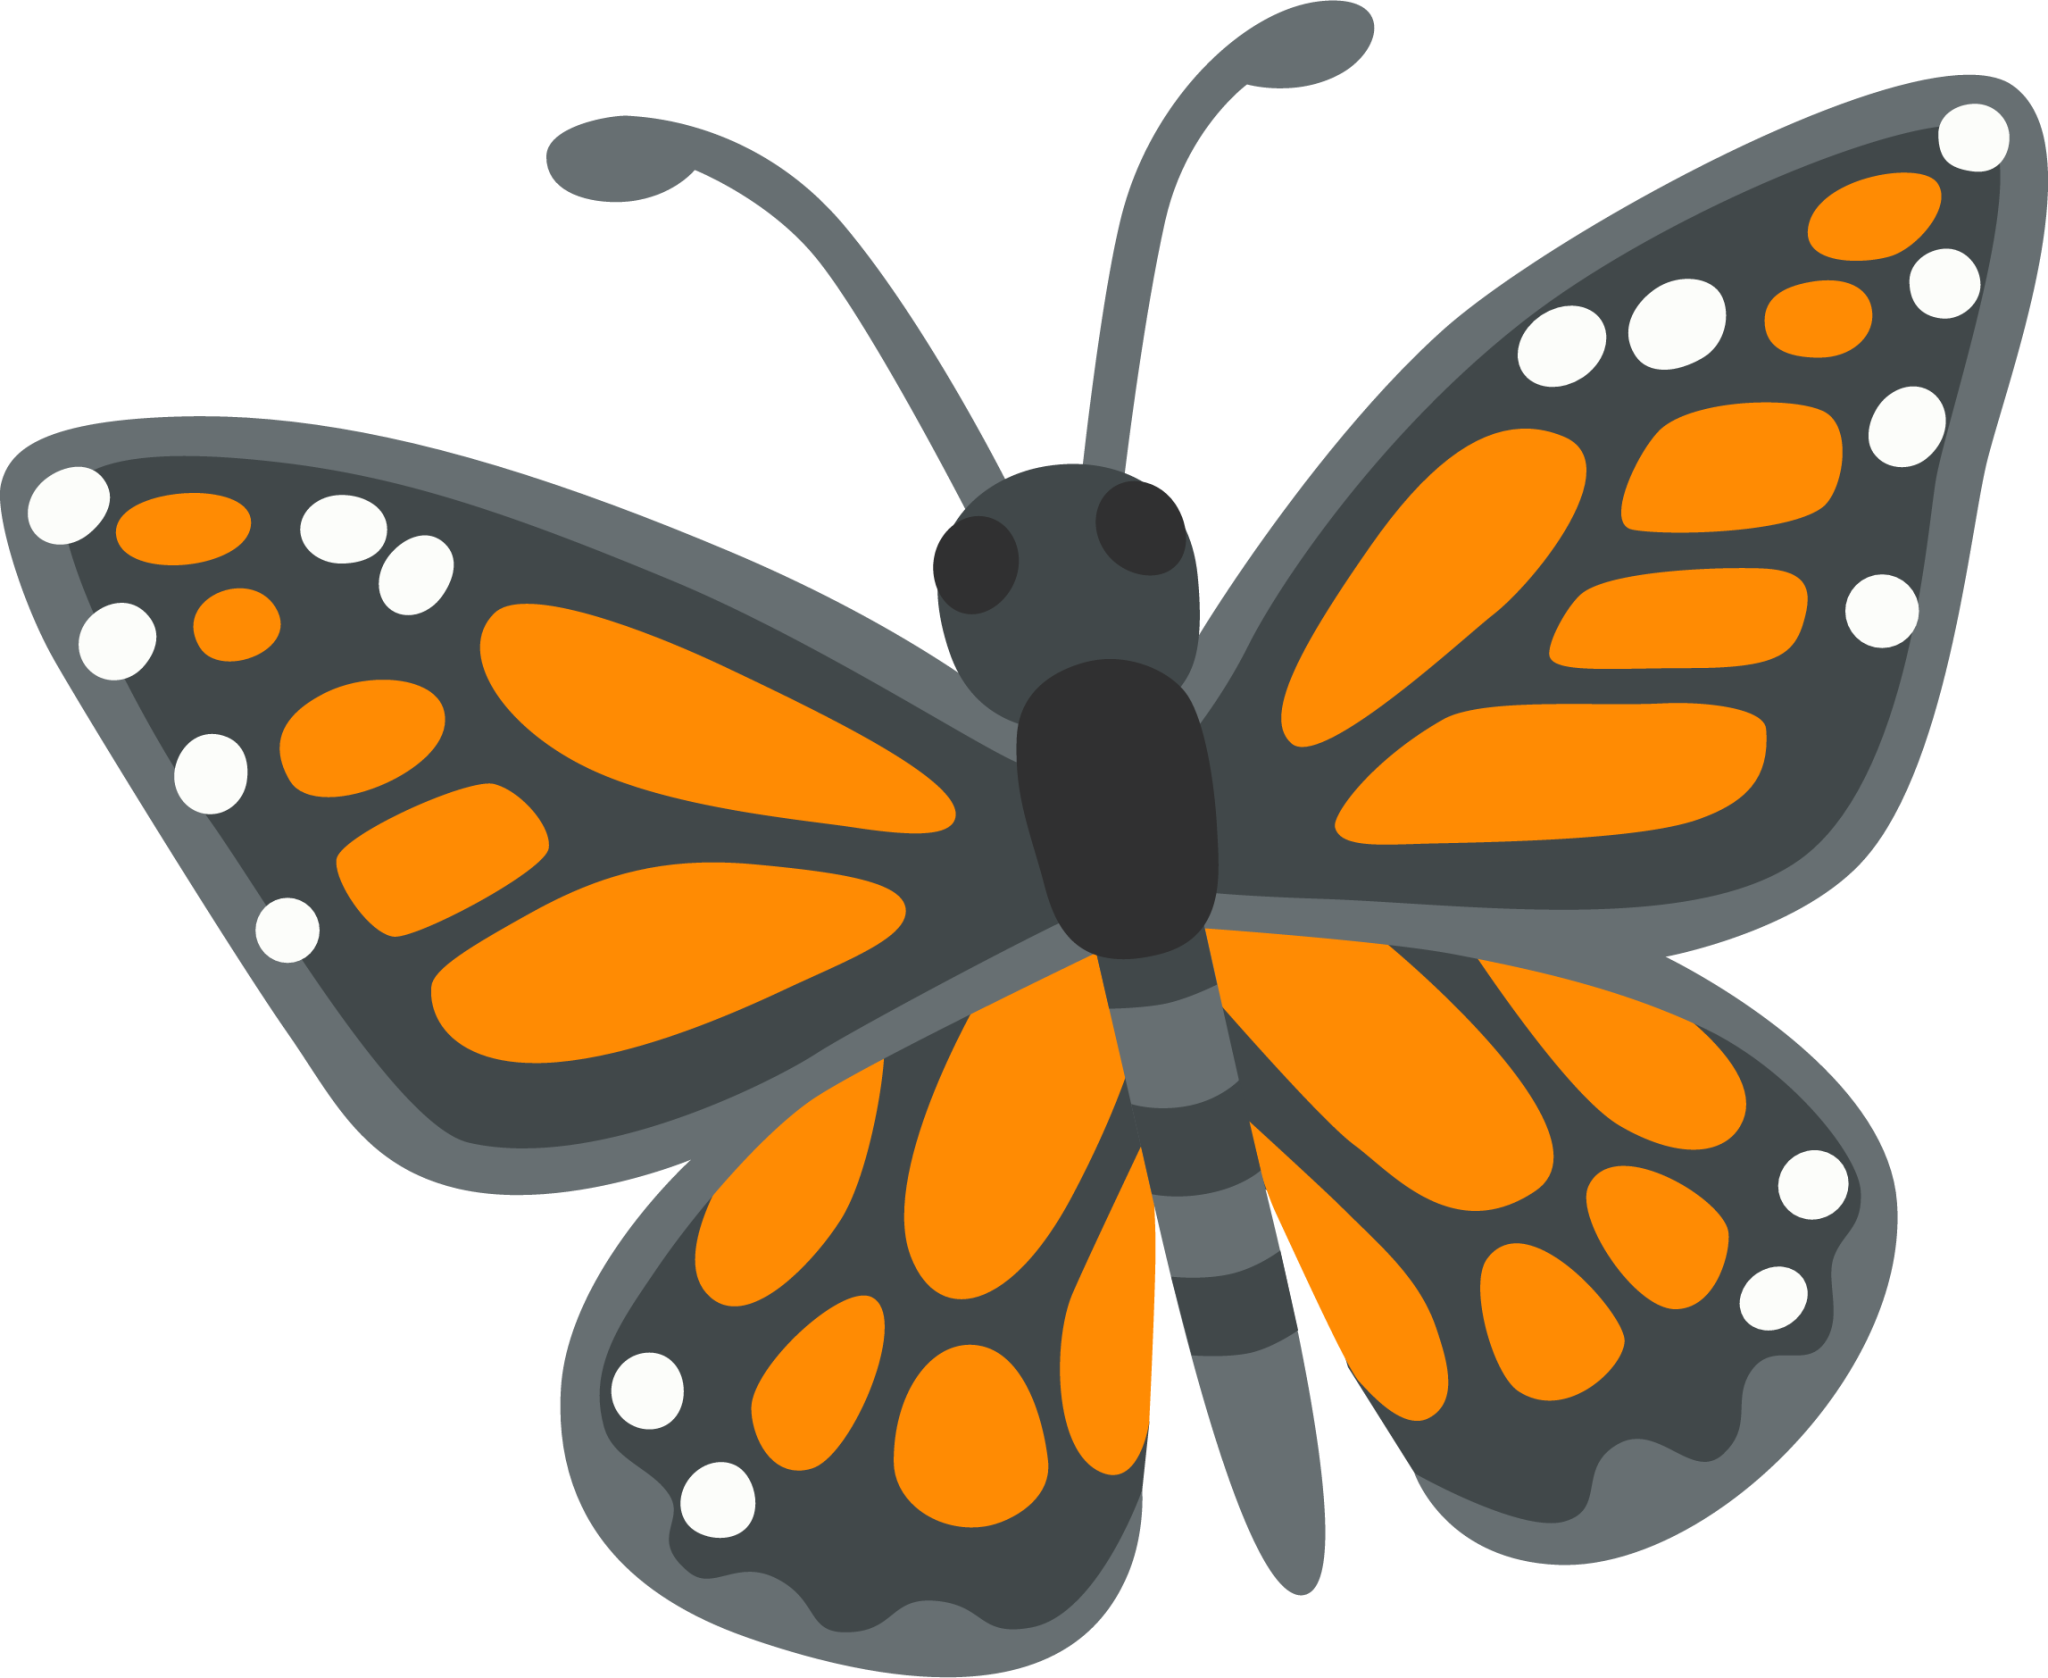 butterfly emoji